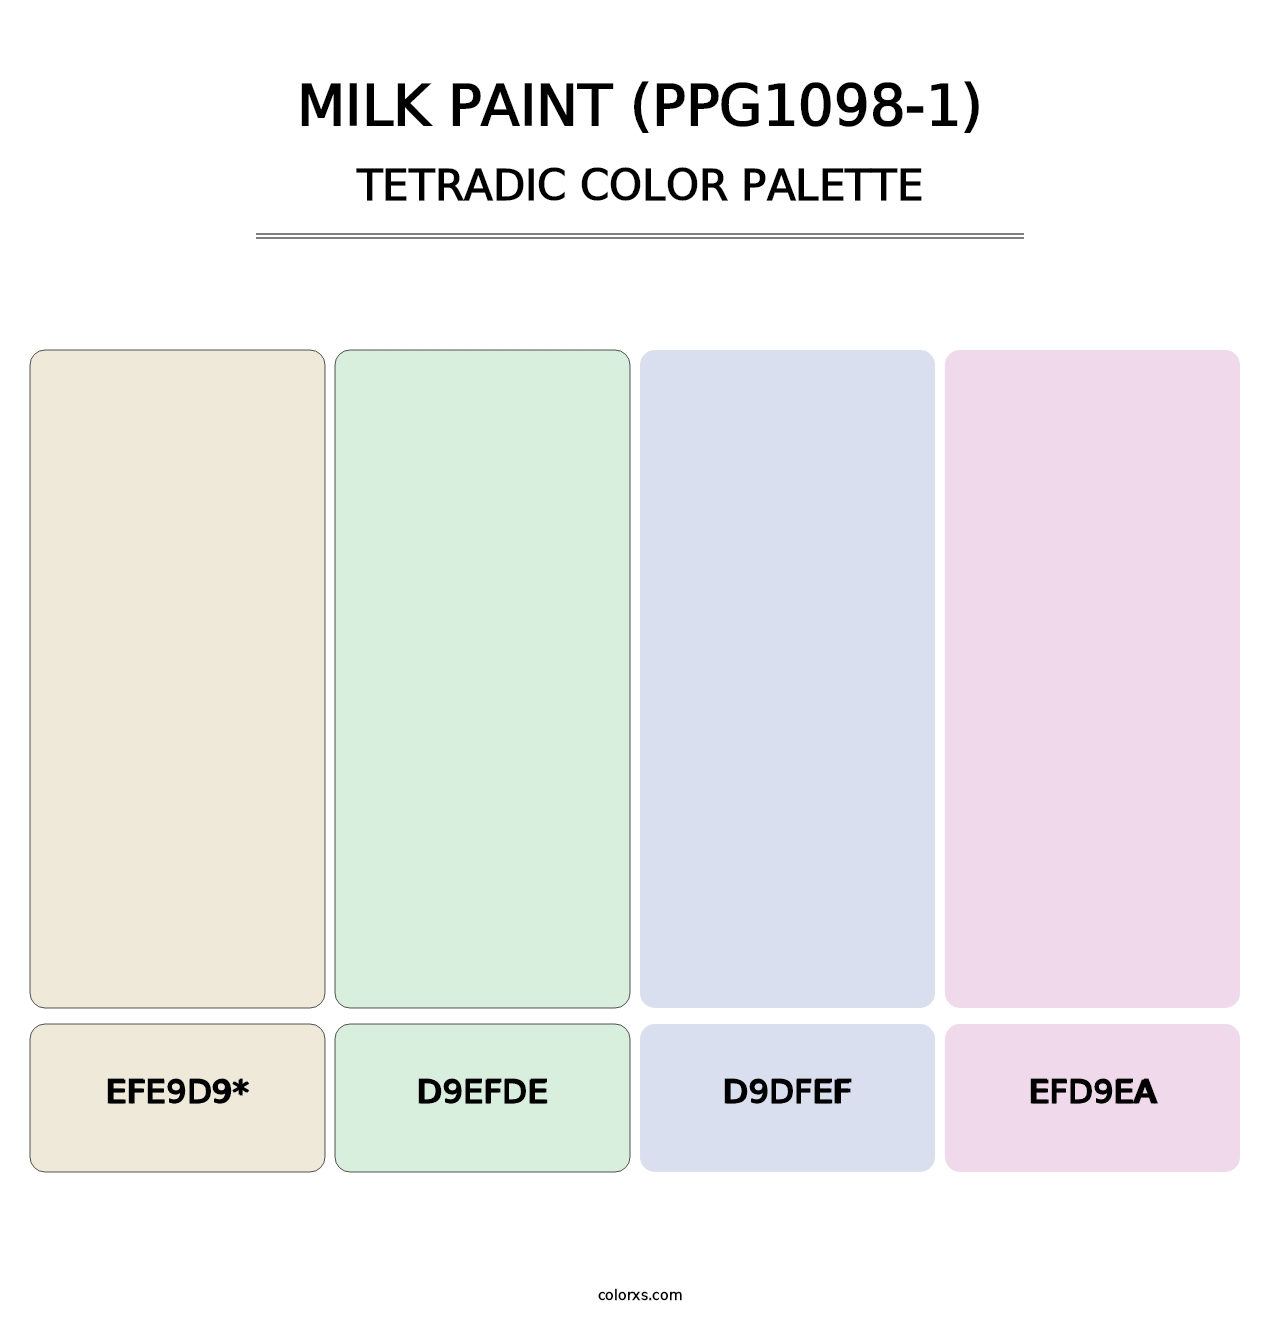 Milk Paint (PPG1098-1) - Tetradic Color Palette